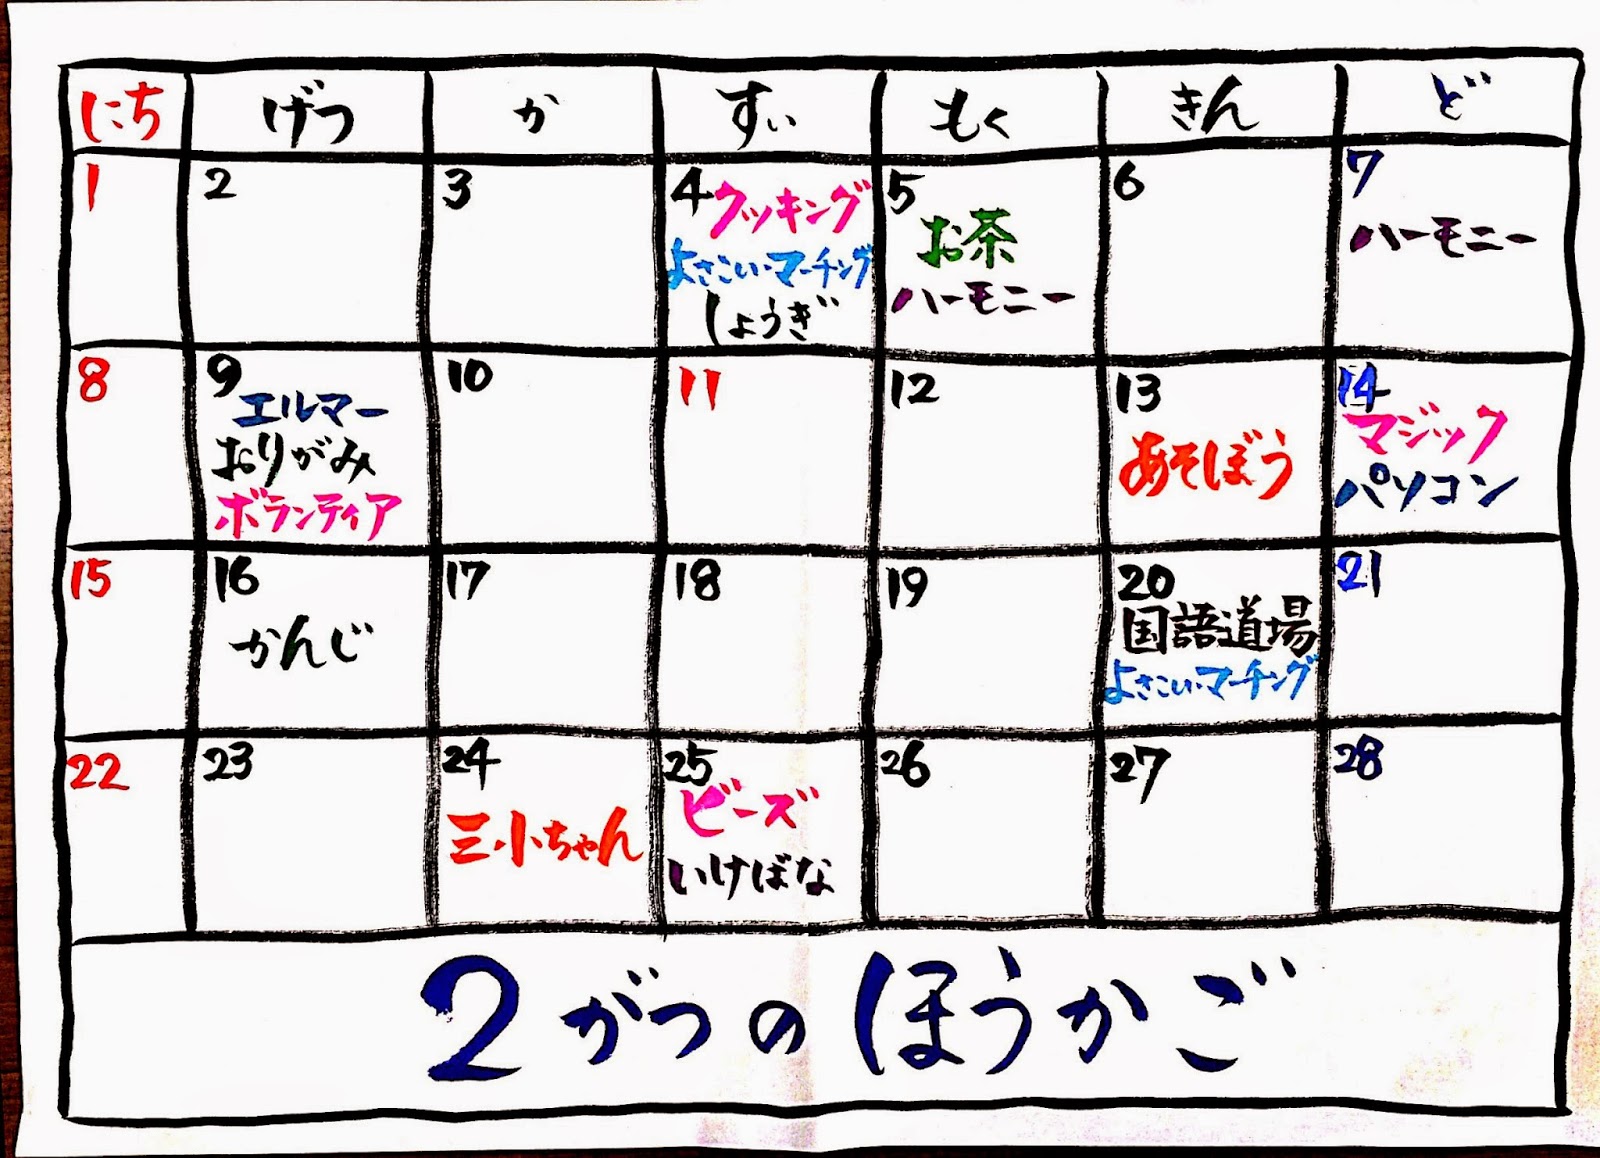 2月のほうかごカレンダー 15 こだいら三小放課後子ども教室